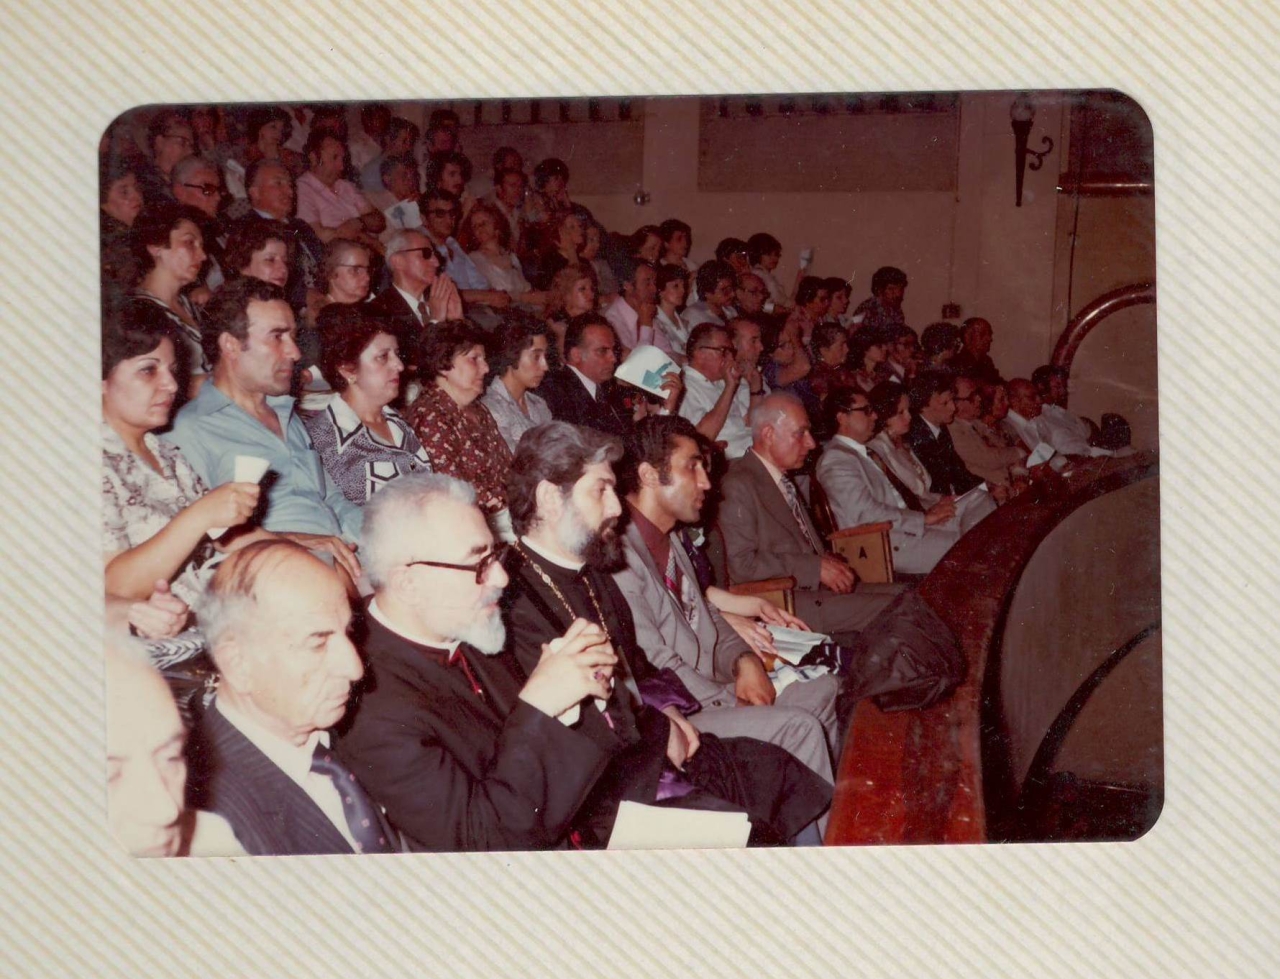 Լուսանկար՝ Սիրիայում Արամ Խաչատրյանի հիշատակին նվիրված  համերգի հանդիսատեսը (համերգի լուսանկարների ալբոմից)